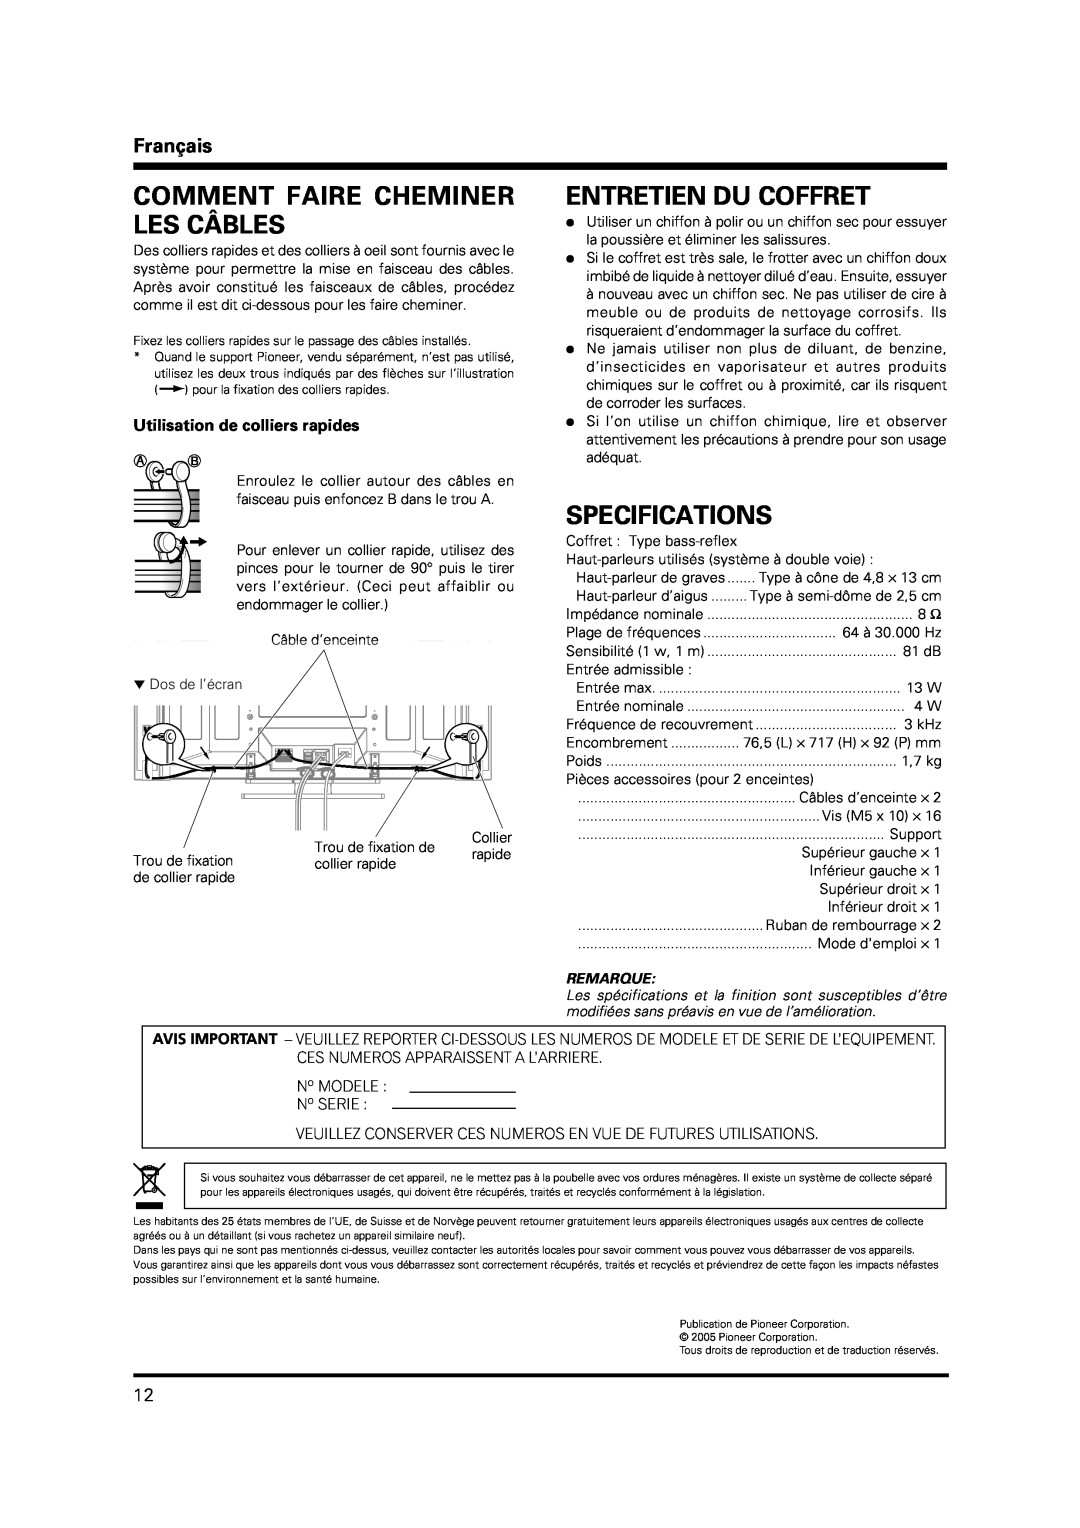 Pioneer PDP-S38 manual Comment Faire Cheminer Les Câbles, Entretien Du Coffret, Specifications, Français, Remarque 